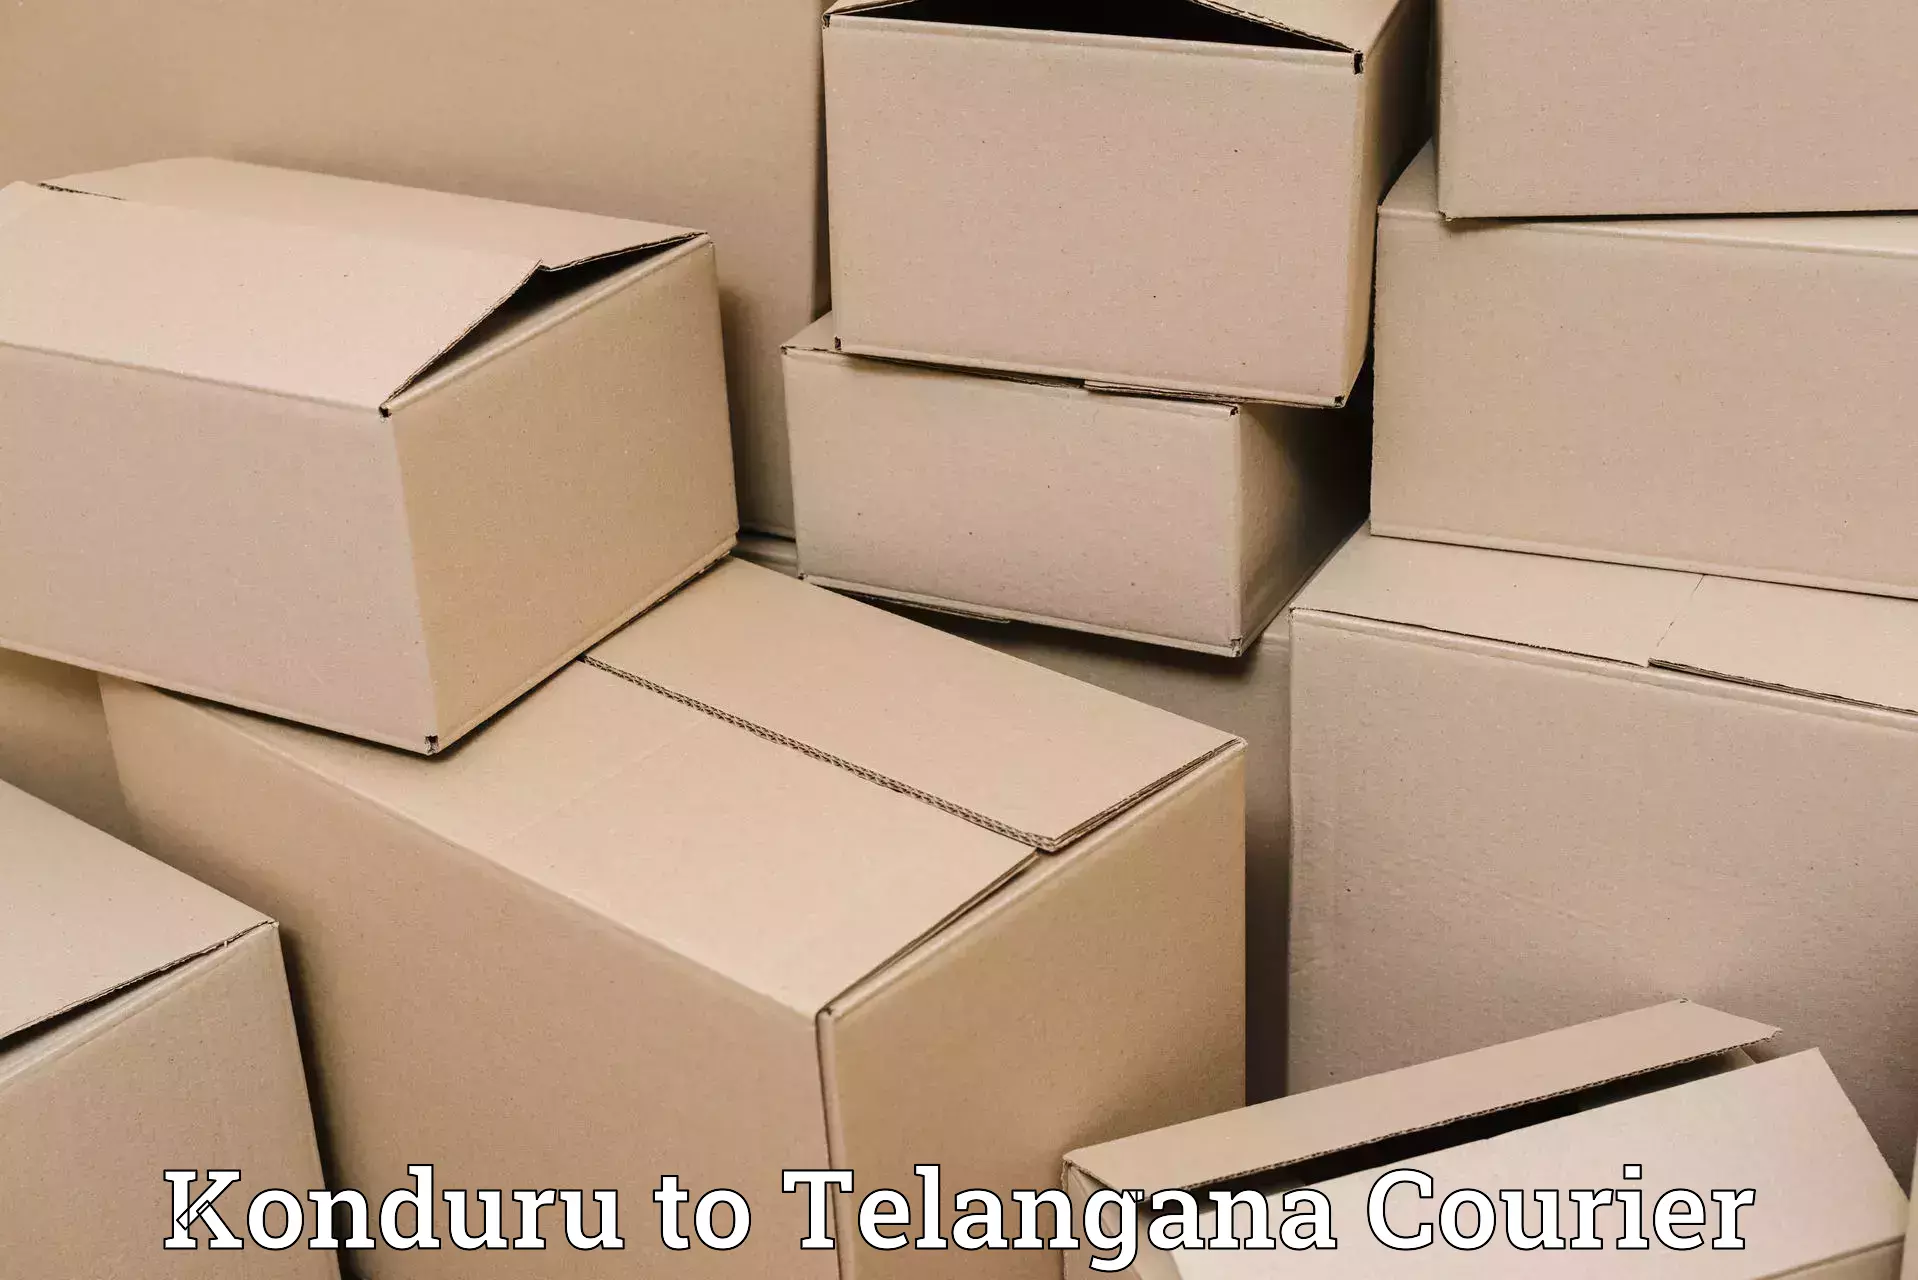 Efficient parcel service Konduru to Hyderabad